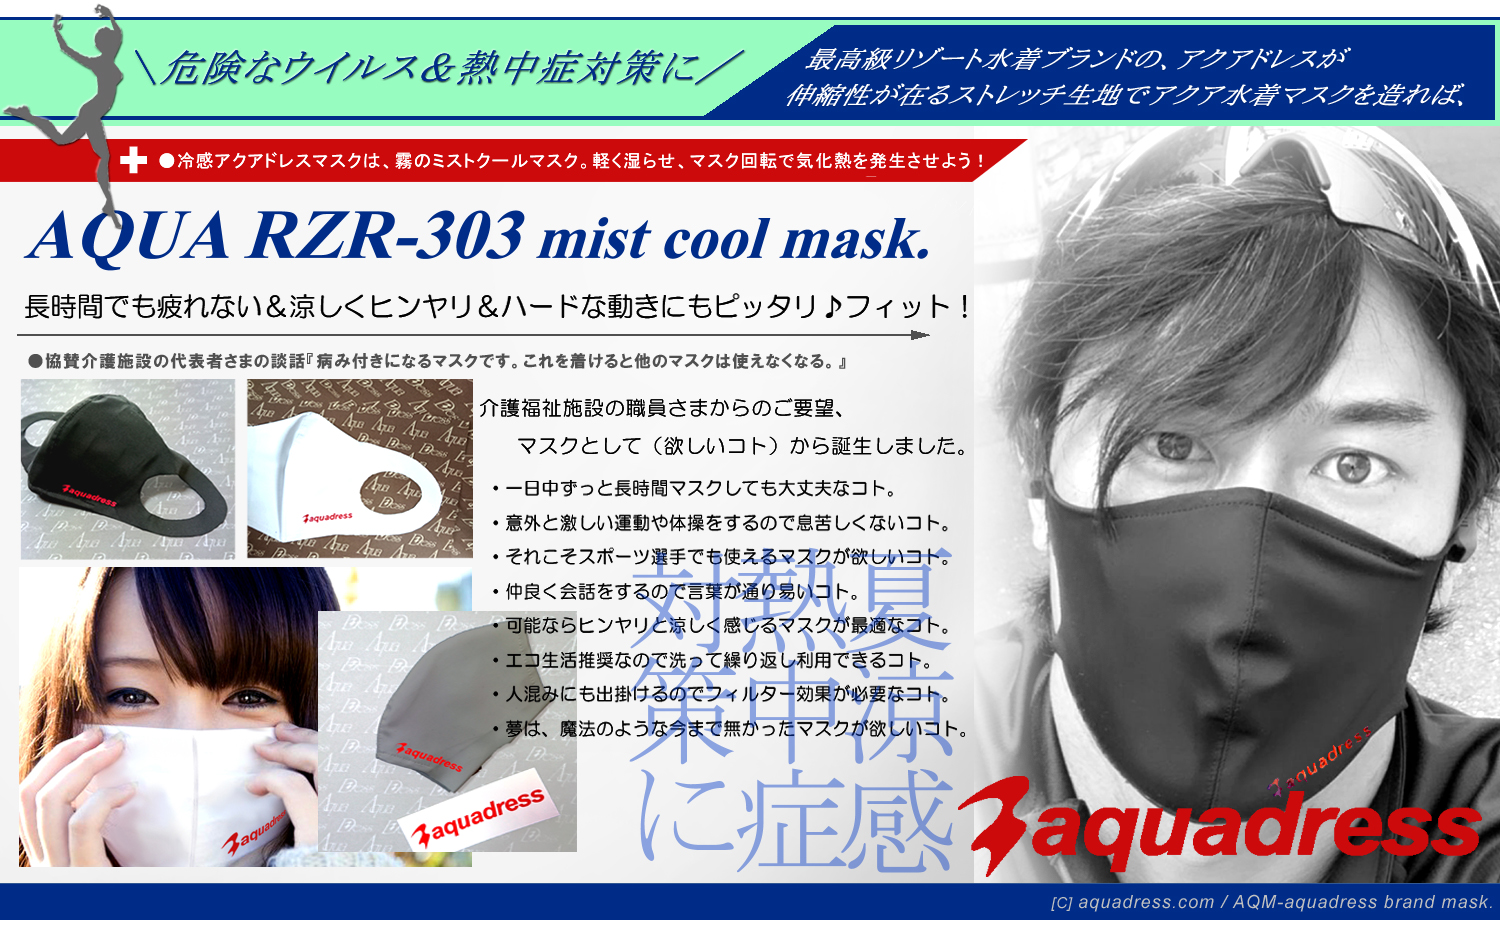 夏は水に濡らして使うマスクとして急速冷感が大評判の熱中症対策も可能な急速水冷アクアドレススポーツマスクです。新開発！最高級スイム素材製、アクアスポーツマスク＼アクア水着マスク＝アクアドレス水着マスク-ＡＱＵＡＤＲＥＳＳ ＭＡＳＫ-アクアドレスオーダーメイドマスク販売開始！真夏に向かって、ヒンヤリ涼しいアクアオーダーマスク＆夏のスポーツマスクとしてご利用ください。アスリートやスポーツ志向の方の最高のフィット性の洗える病み付きになる最新の２４時間対応の洗える最高級の水着マスク。公式aquadress mask、勿論、メイドインジャパン日本国内製品です。